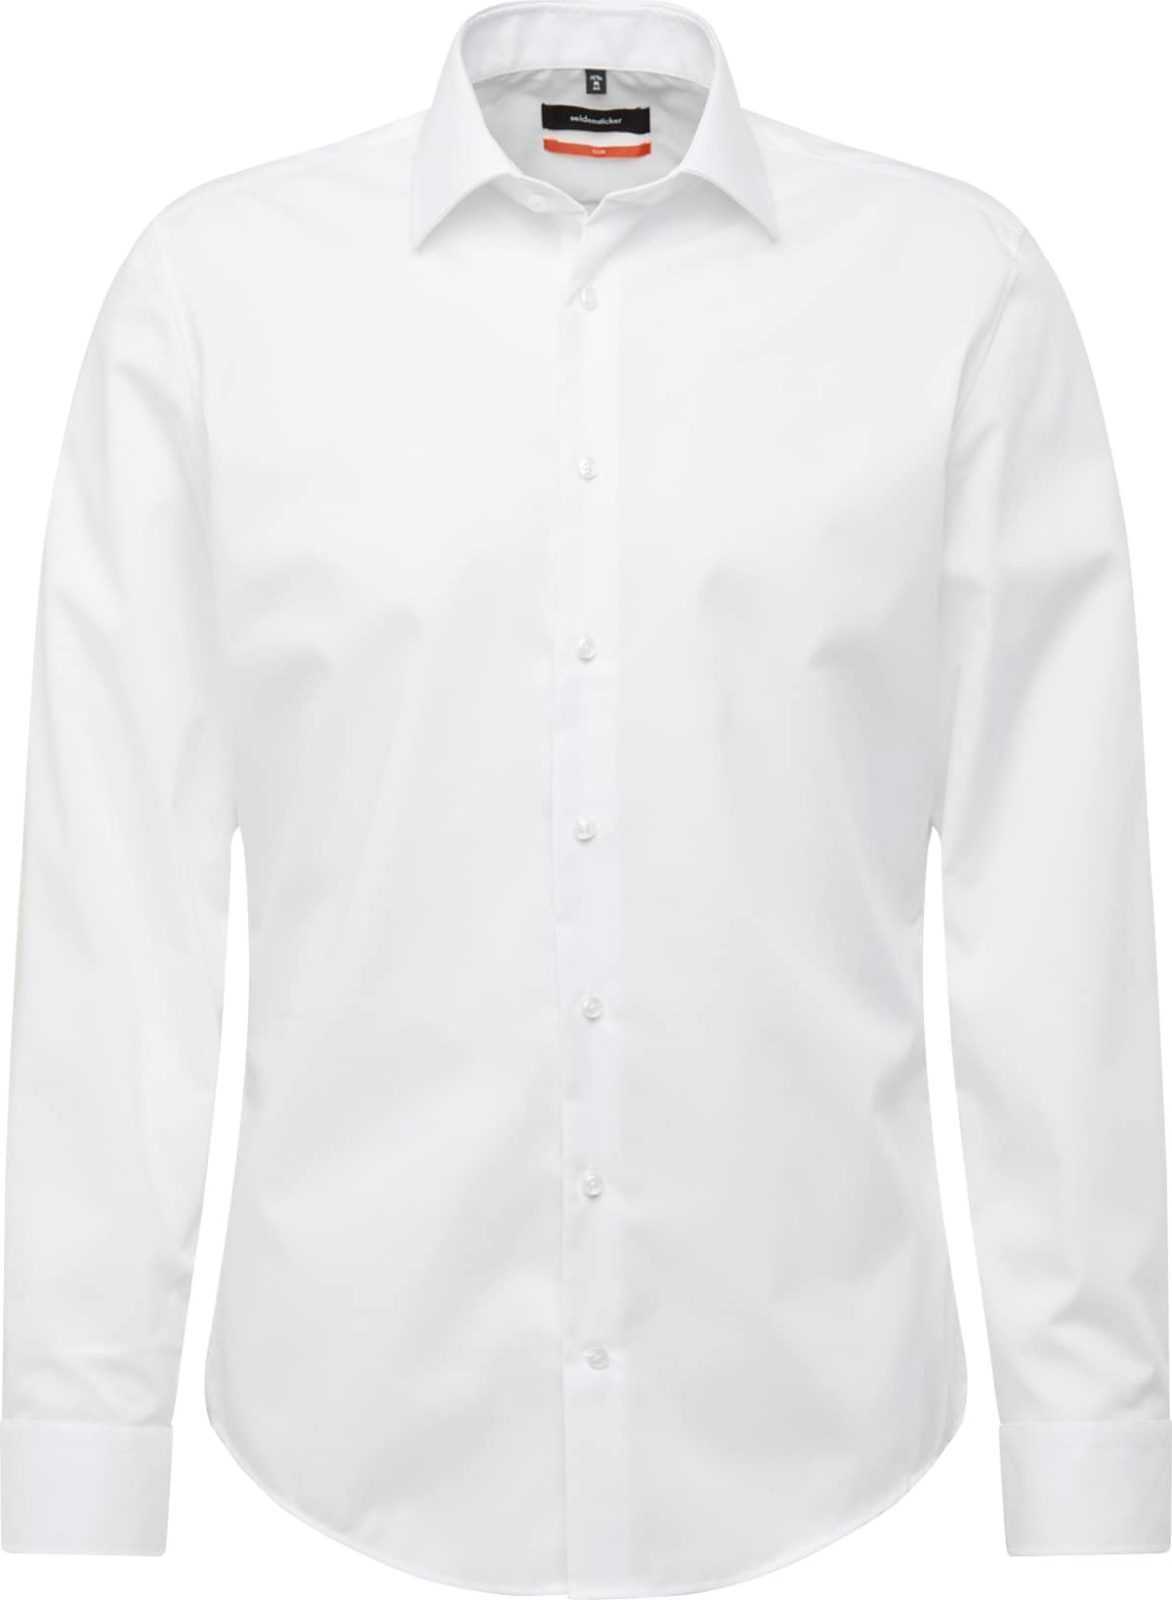 SEIDENSTICKER Společenská košile bílá